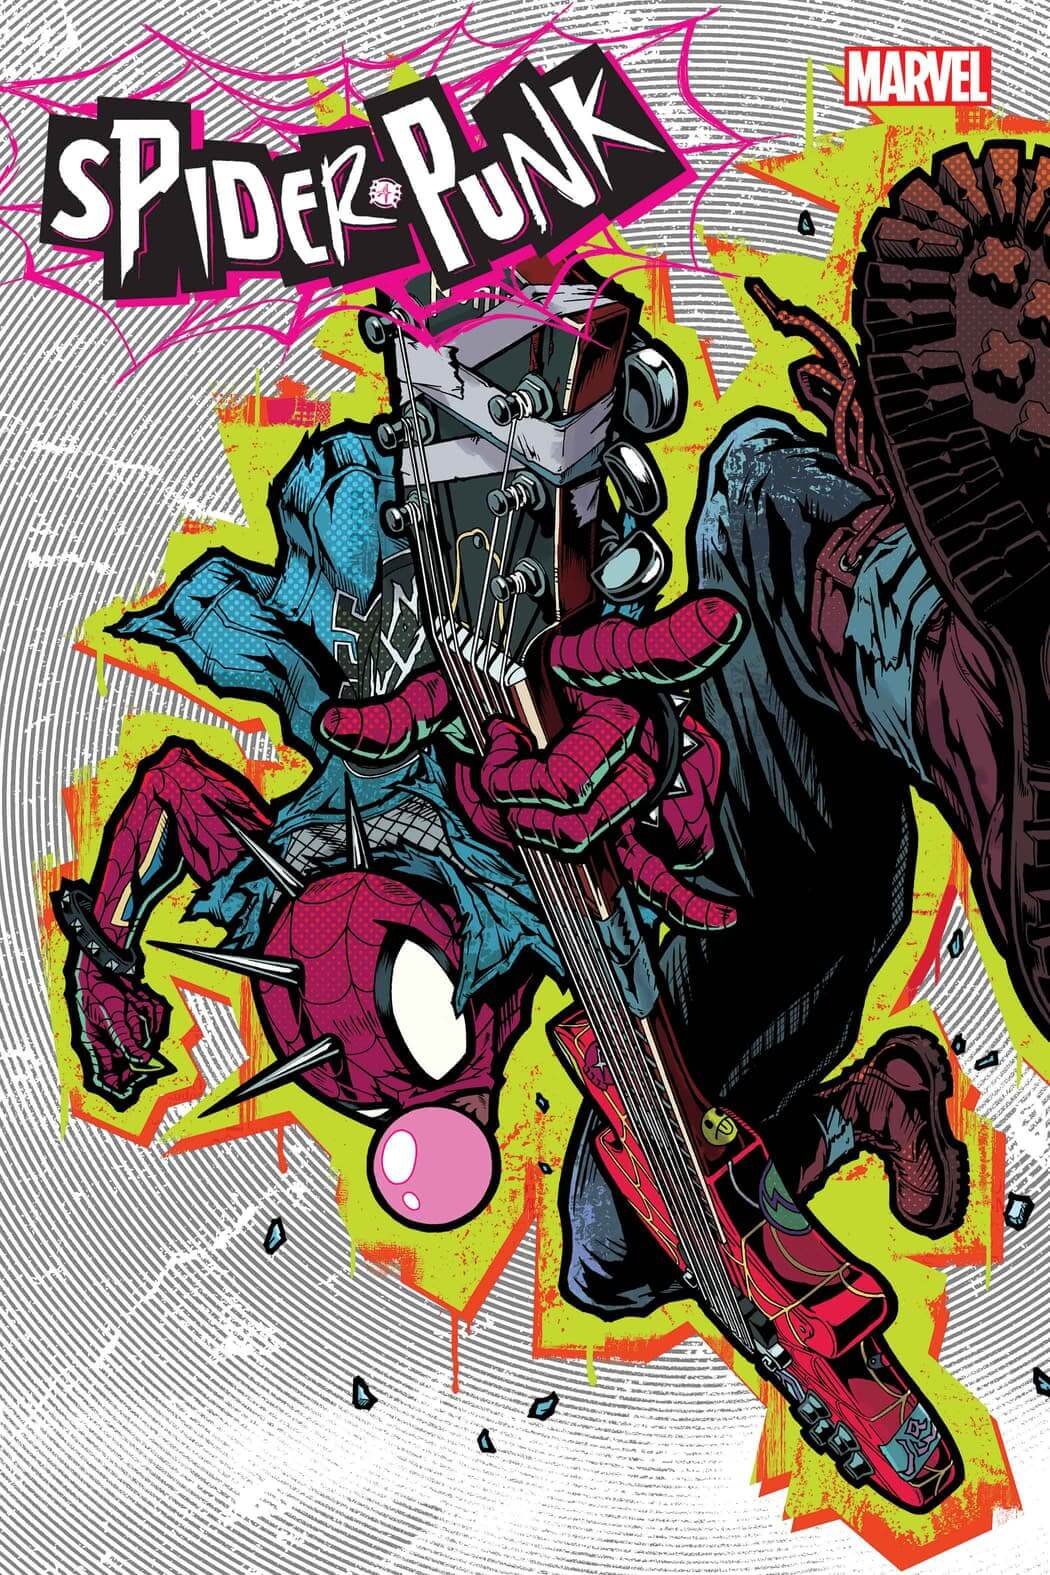 Couverture de Spider-Punk 1 par Takashi Okazaki